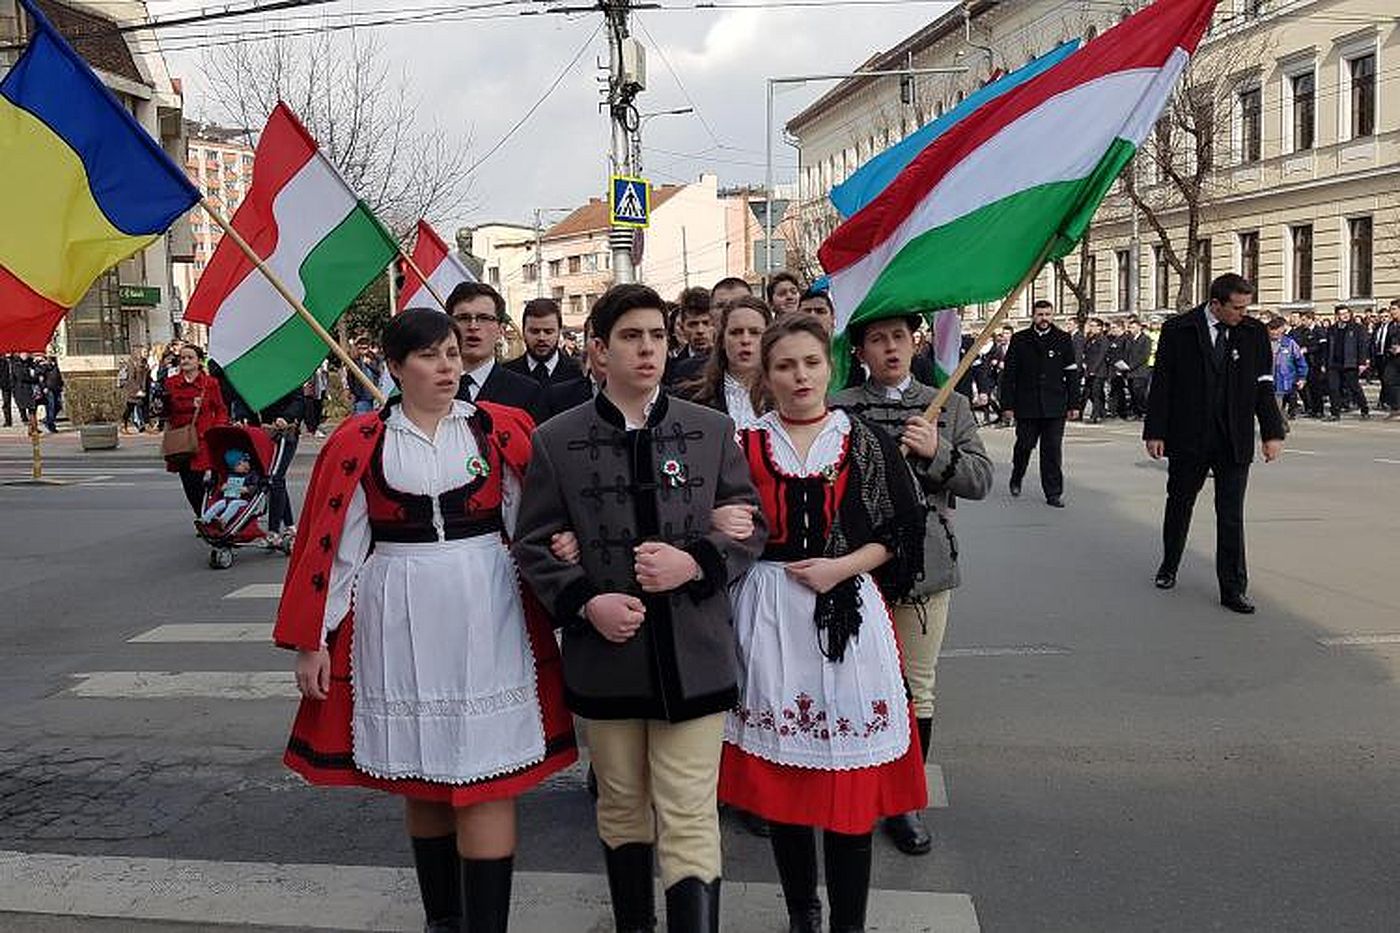 Guvernul Ungariei spune de ce pompează bani în Ardeal:„Prima cerere de autonomie a maghiarilor din Transilvania e de actualitate